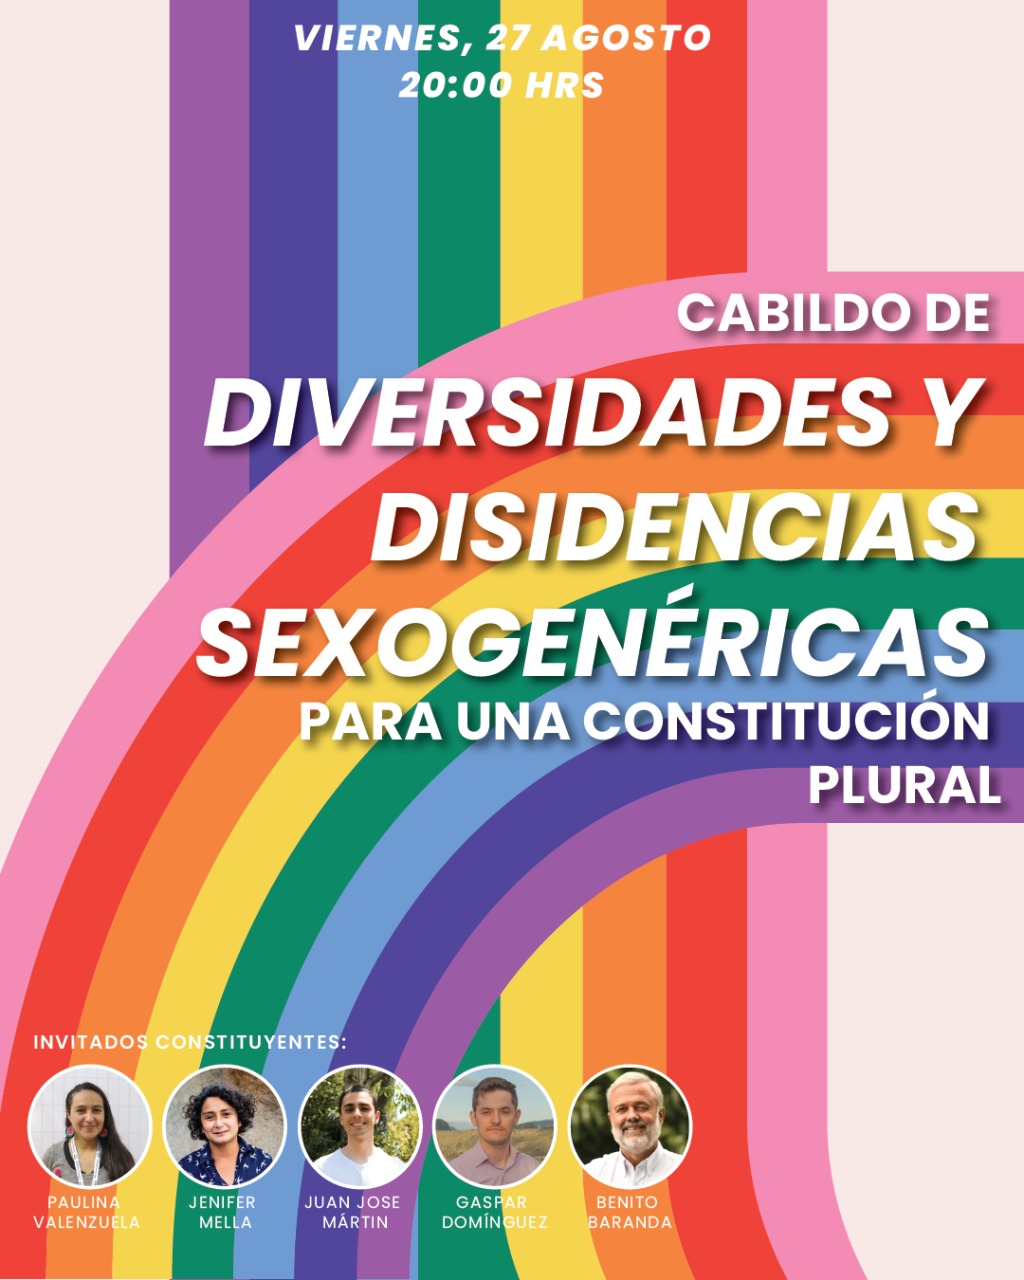 Constituyentes participarán de cabildo “Diversidades y disidencias sexo-genéricas para una constitución plural”